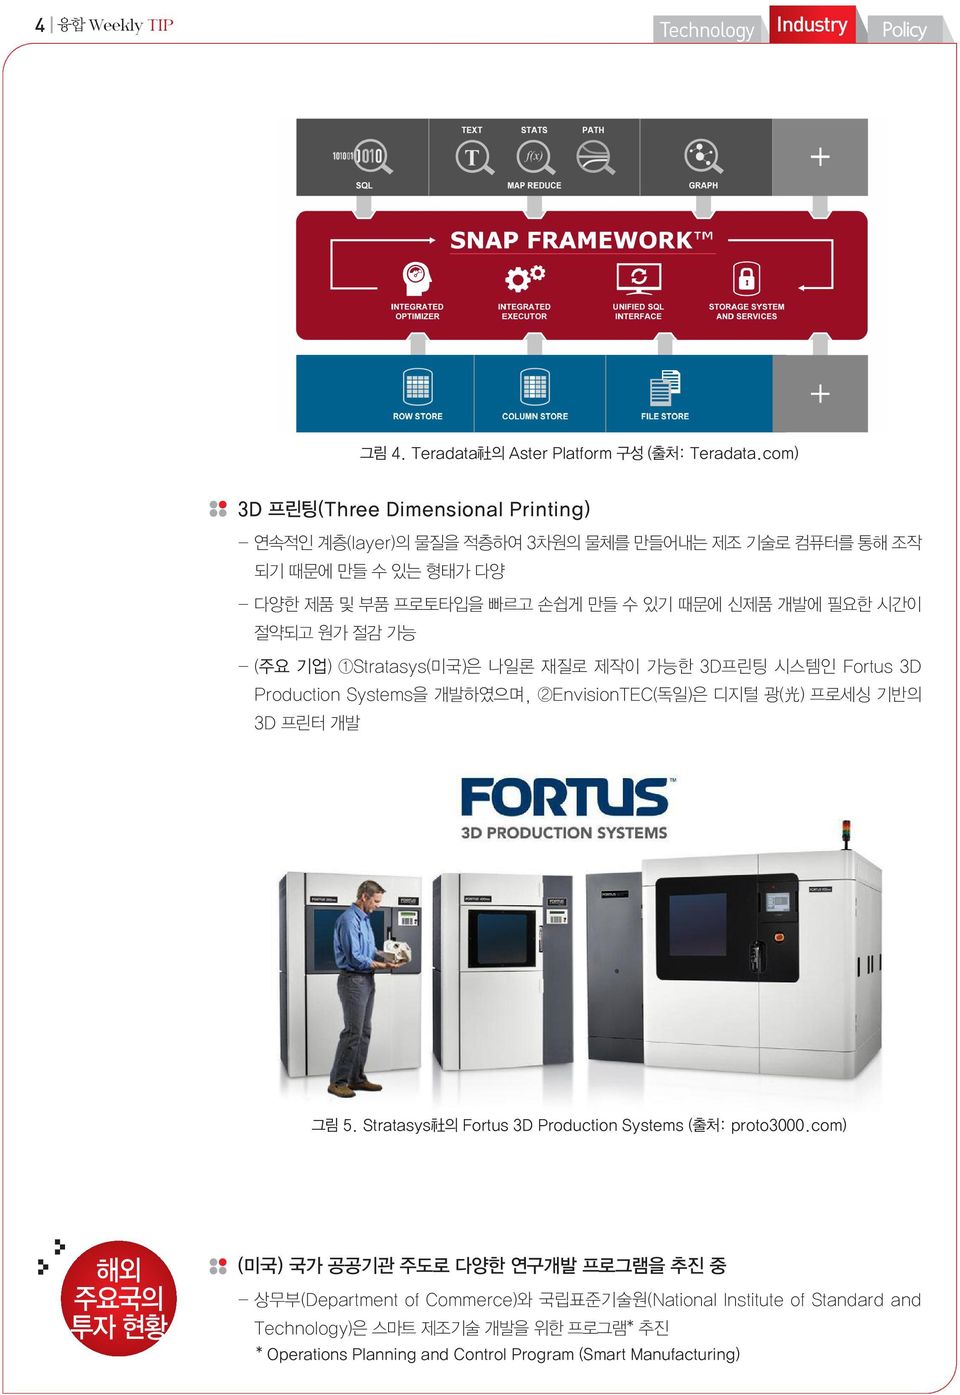 개발에 필요한 시간이 절약되고 원가 절감 가능 - (주요 기업) 1Stratasys(미국)은 나일론 재질로 제작이 가능한 3D프린팅 시스템인 Fortus 3D Production Systems을 개발하였으며, 2EnvisionTEC(독일)은 디지털 광( 光 ) 프로세싱 기반의 3D 프린터 개발 그림 5.